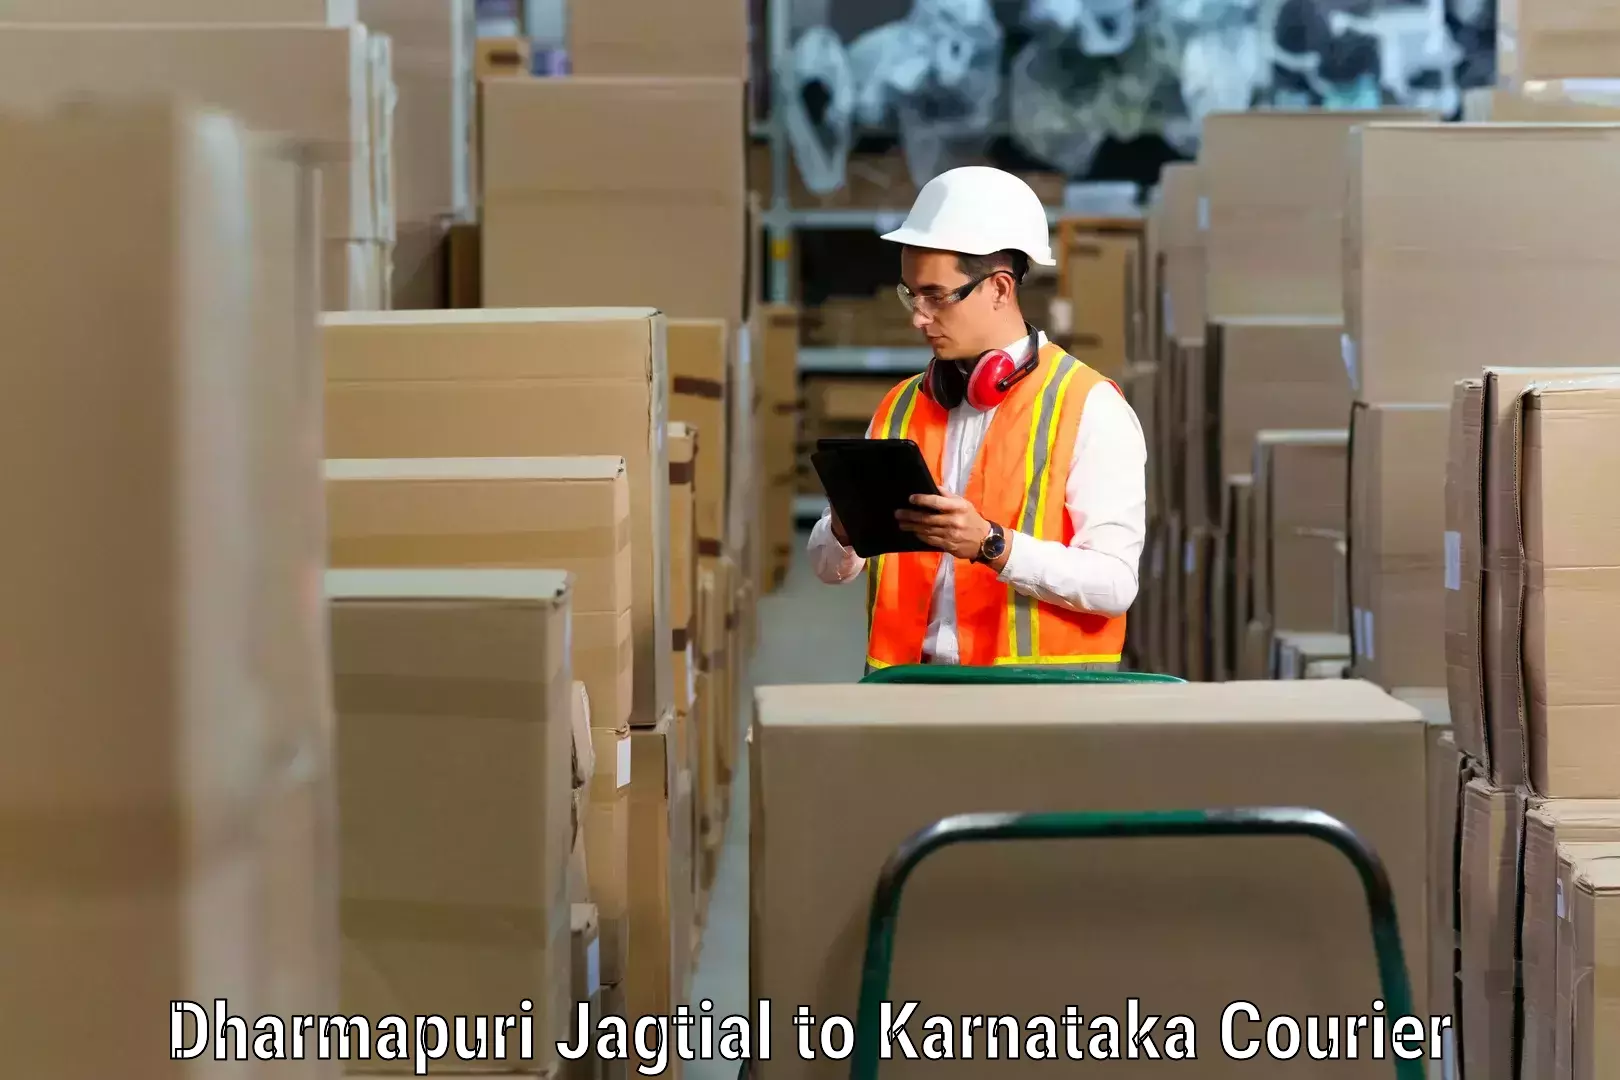 Reliable movers Dharmapuri Jagtial to Siruguppa